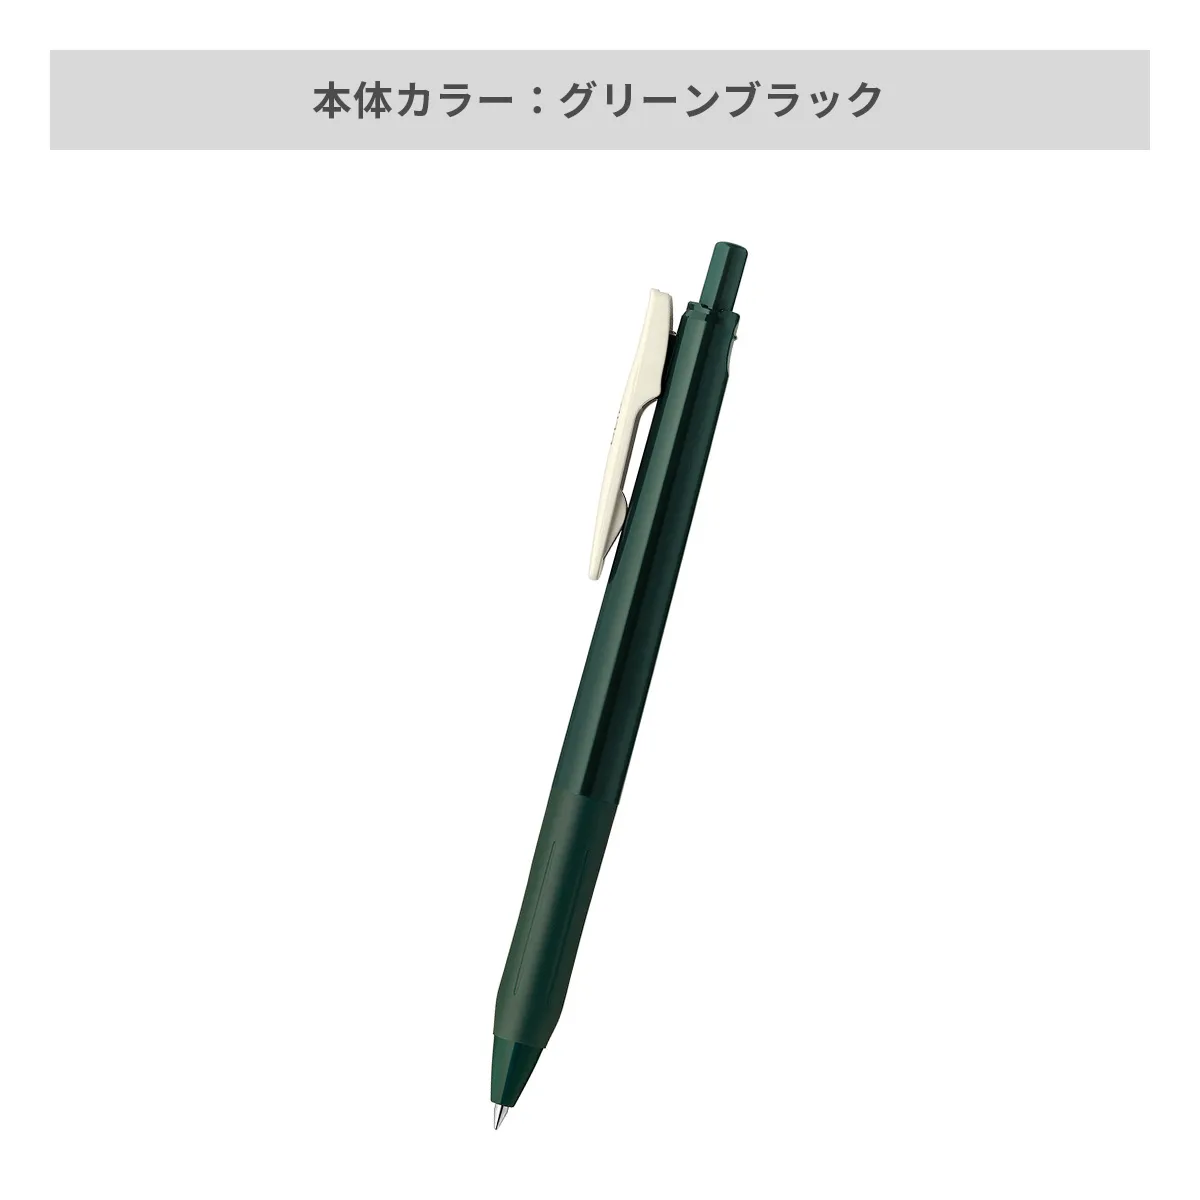 ゼブラ サラサクリップ0.5 ビンテージカラー 0.5mm 【名入れボールペン / パッド印刷】